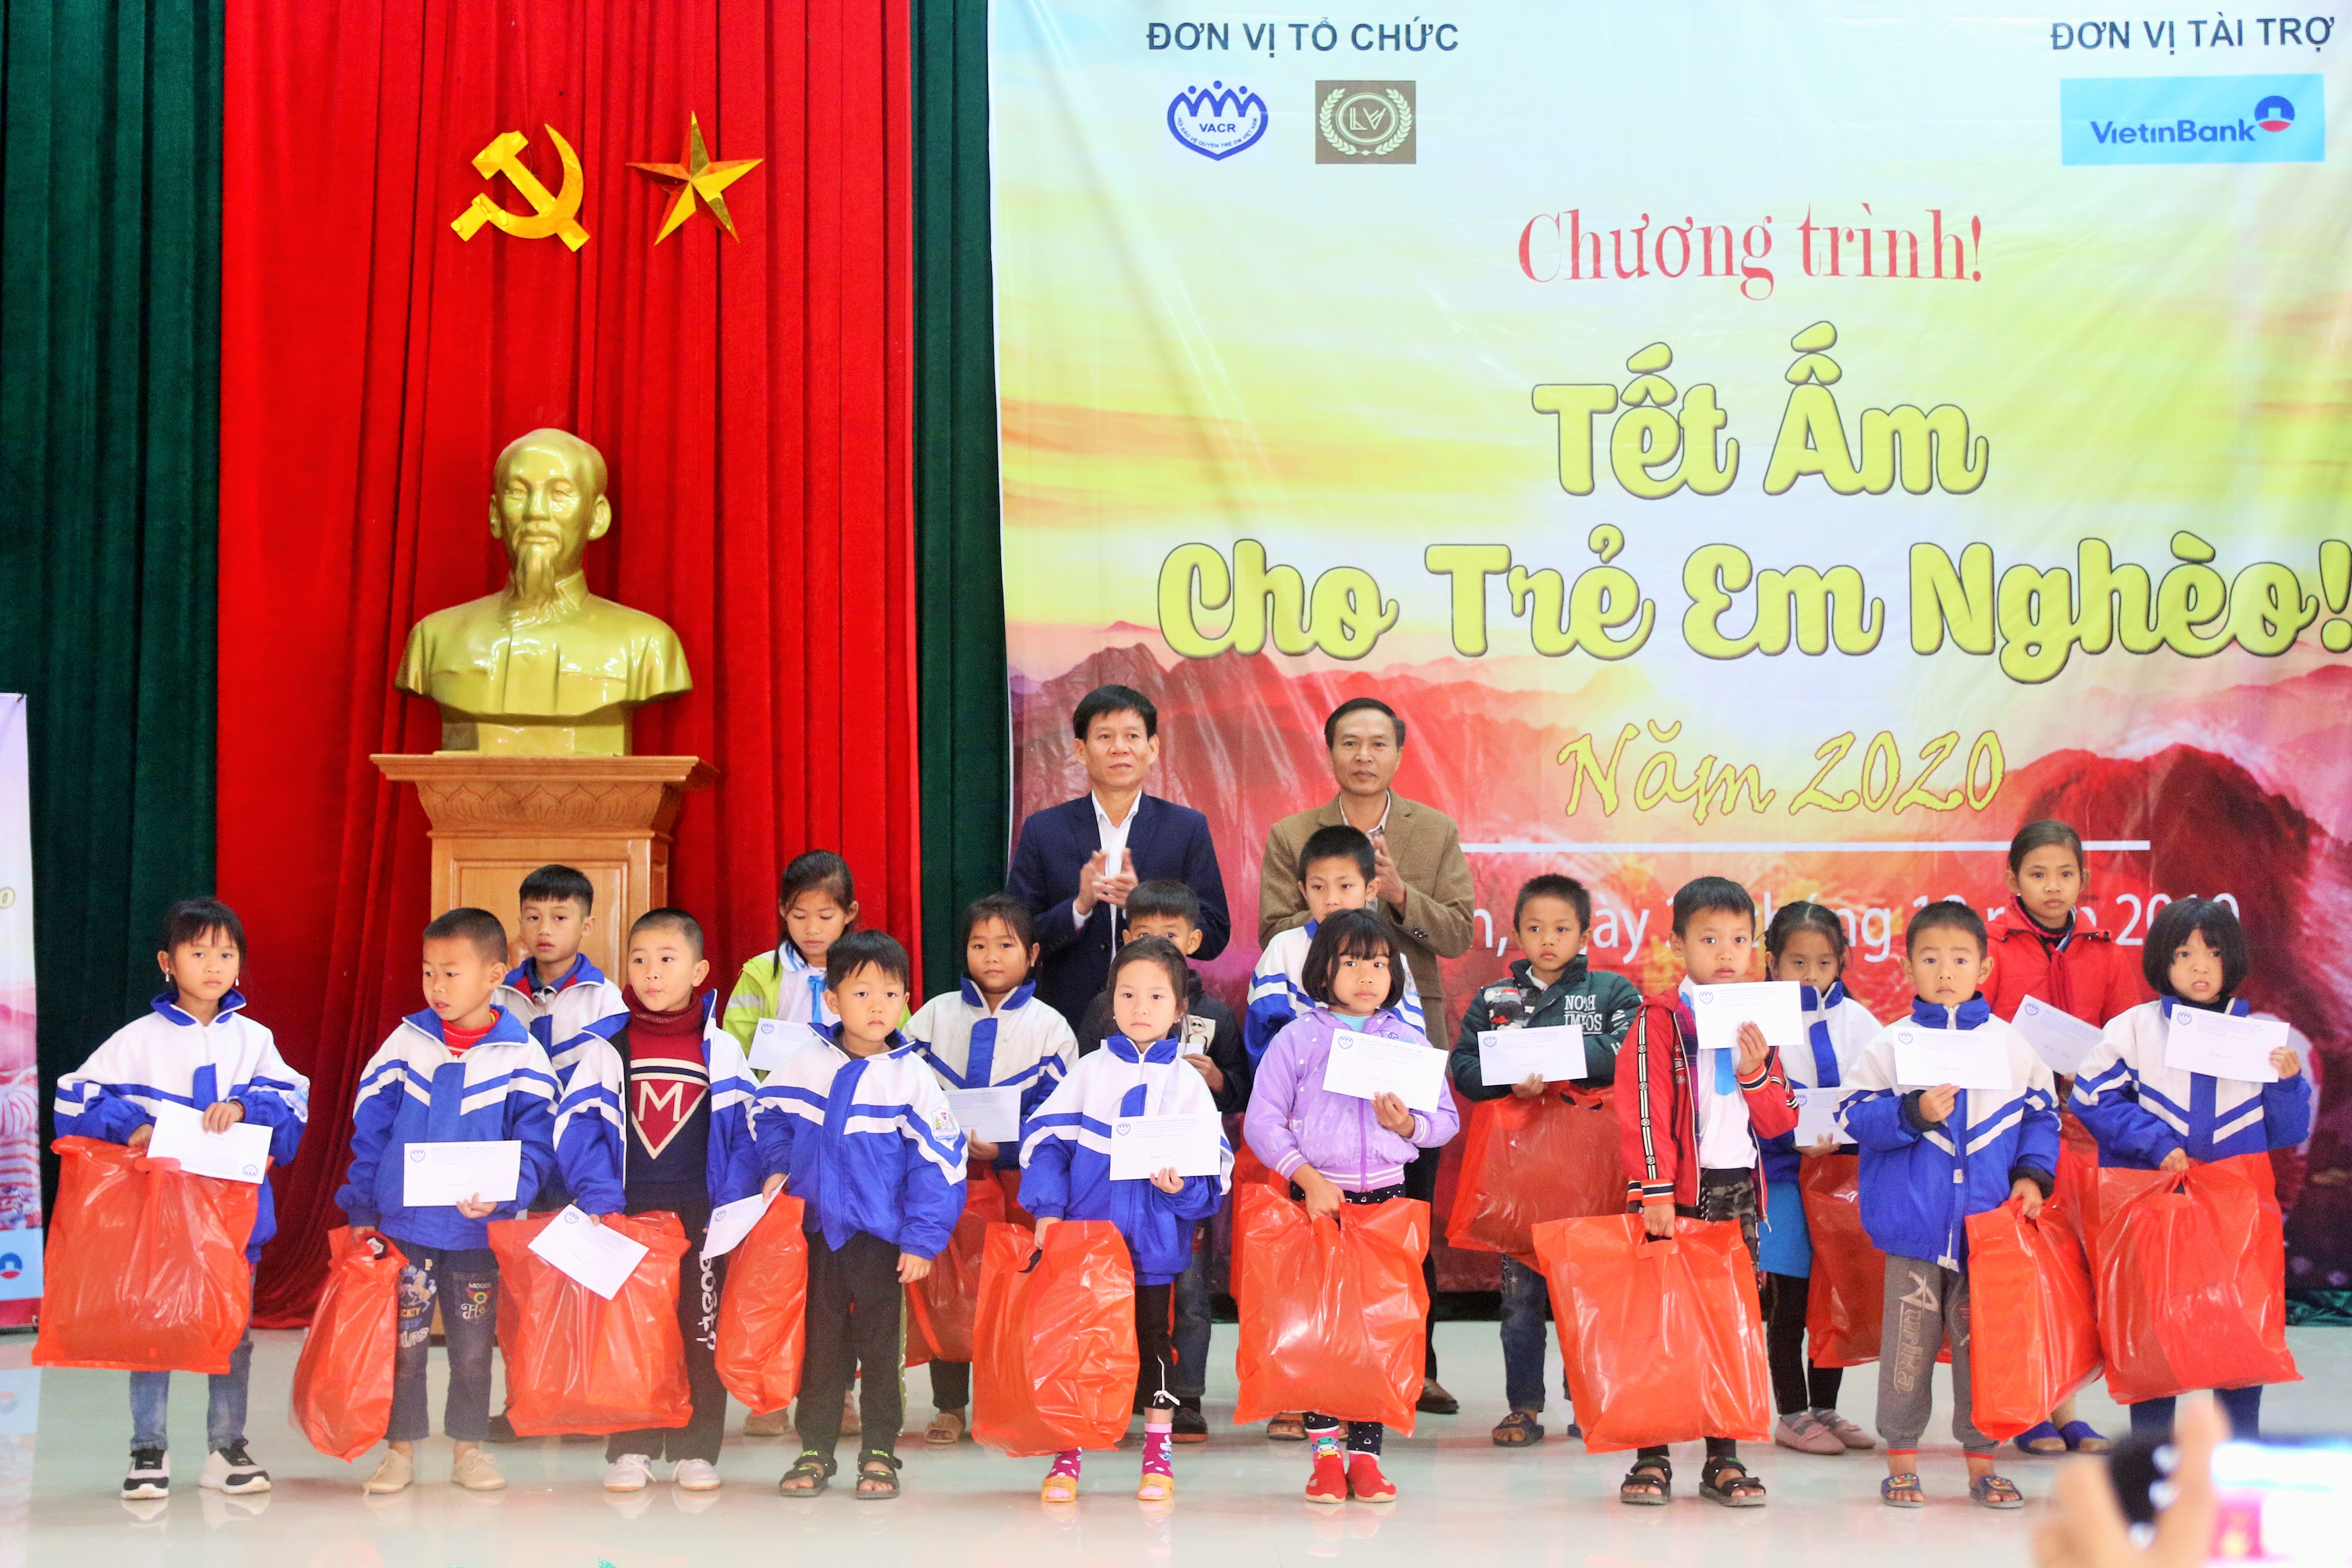 chương trình tết ấm cho trẻ em nghèo tại huyện Tân Kỳ.